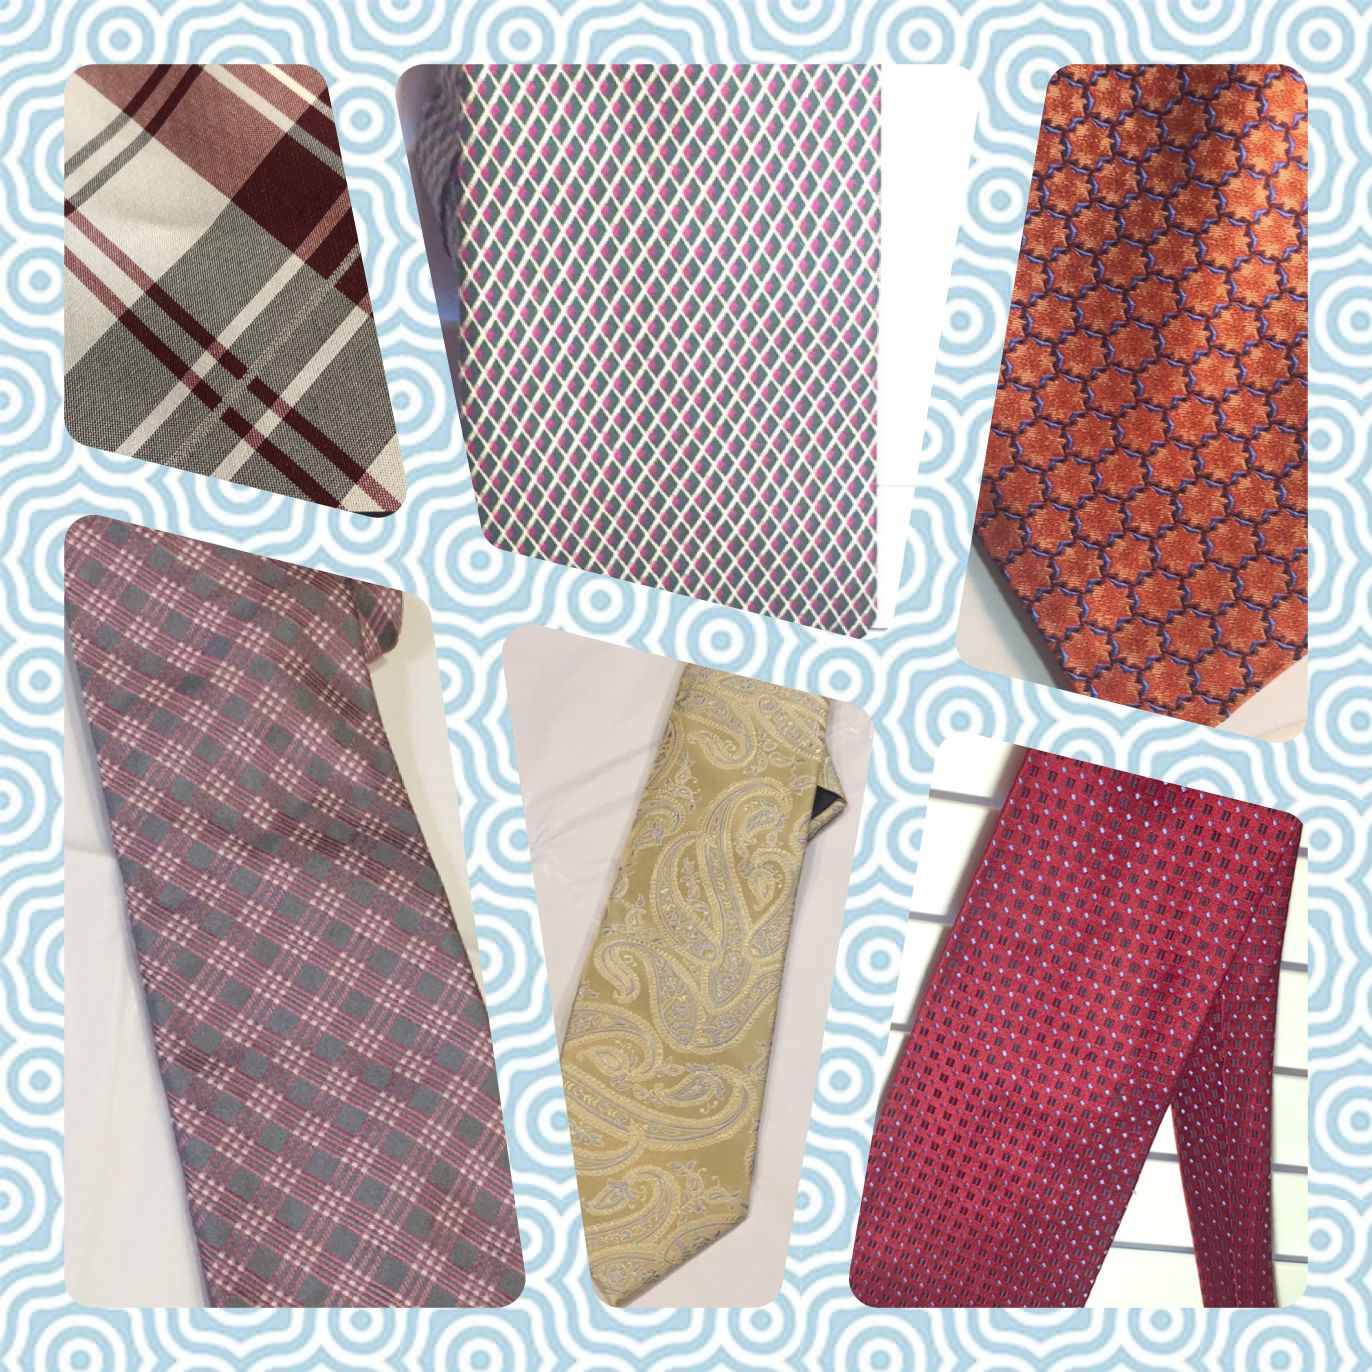 Six designer men’s Neckties